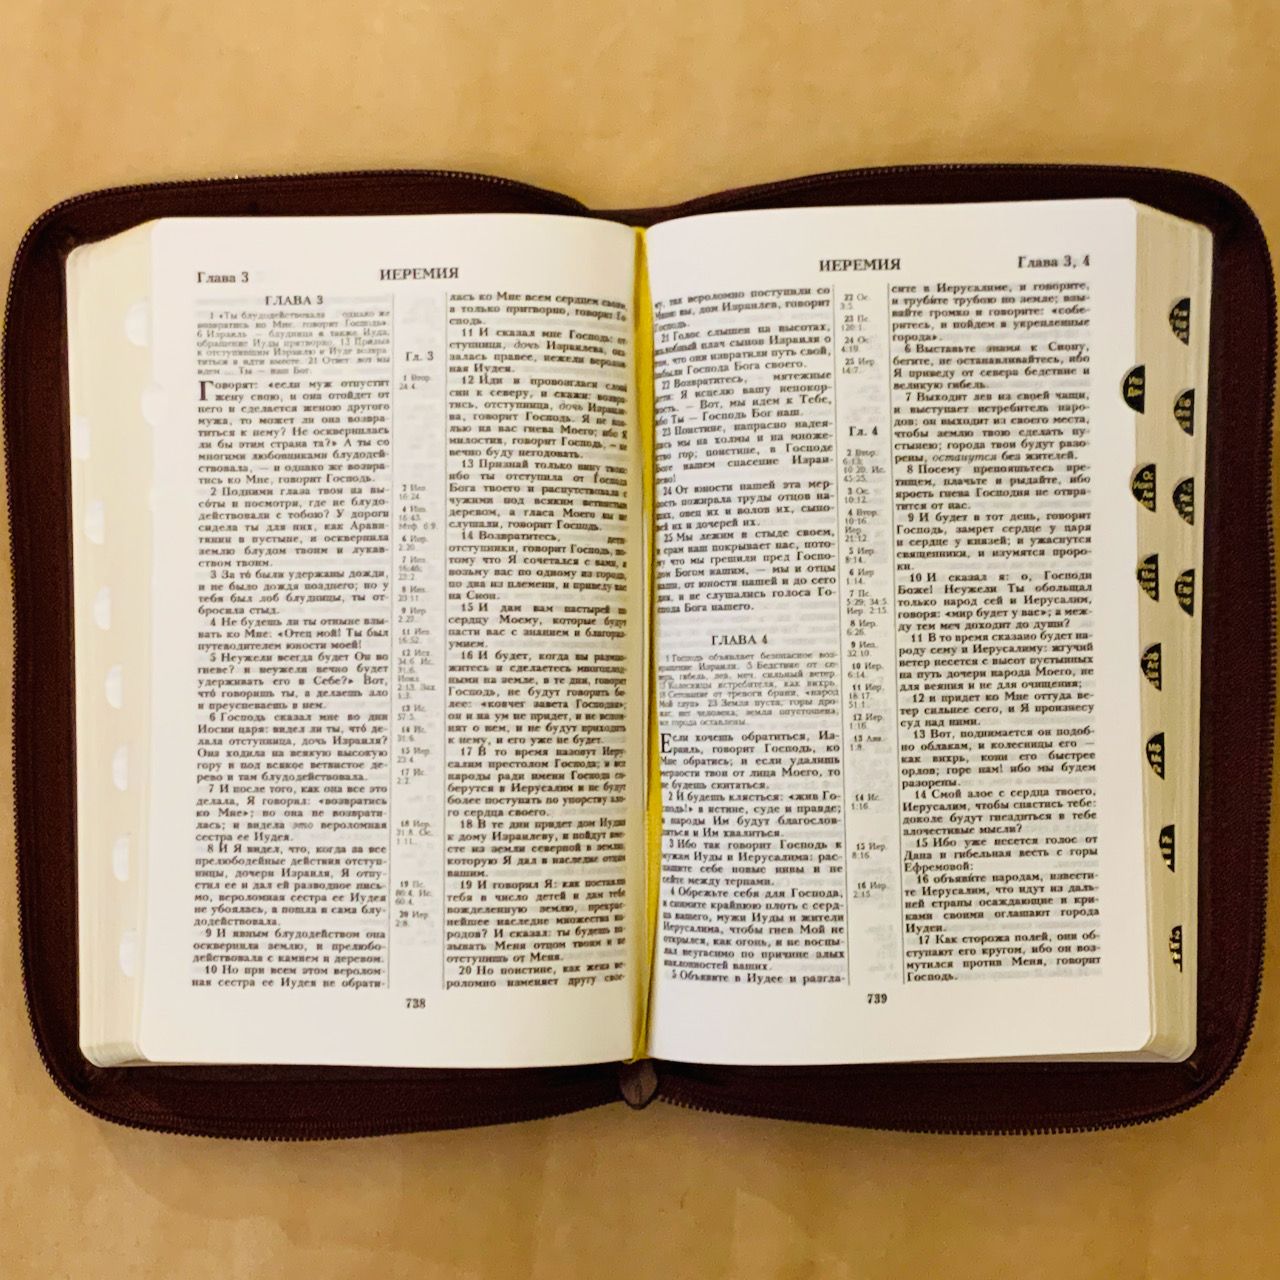 БИБЛИЯ 055zti кожаный переплет на молнии с индексами, цвет бордо , средний формат, 135*210 мм, параллельные места по центру страницы, золотой обрез, крупный шрифт